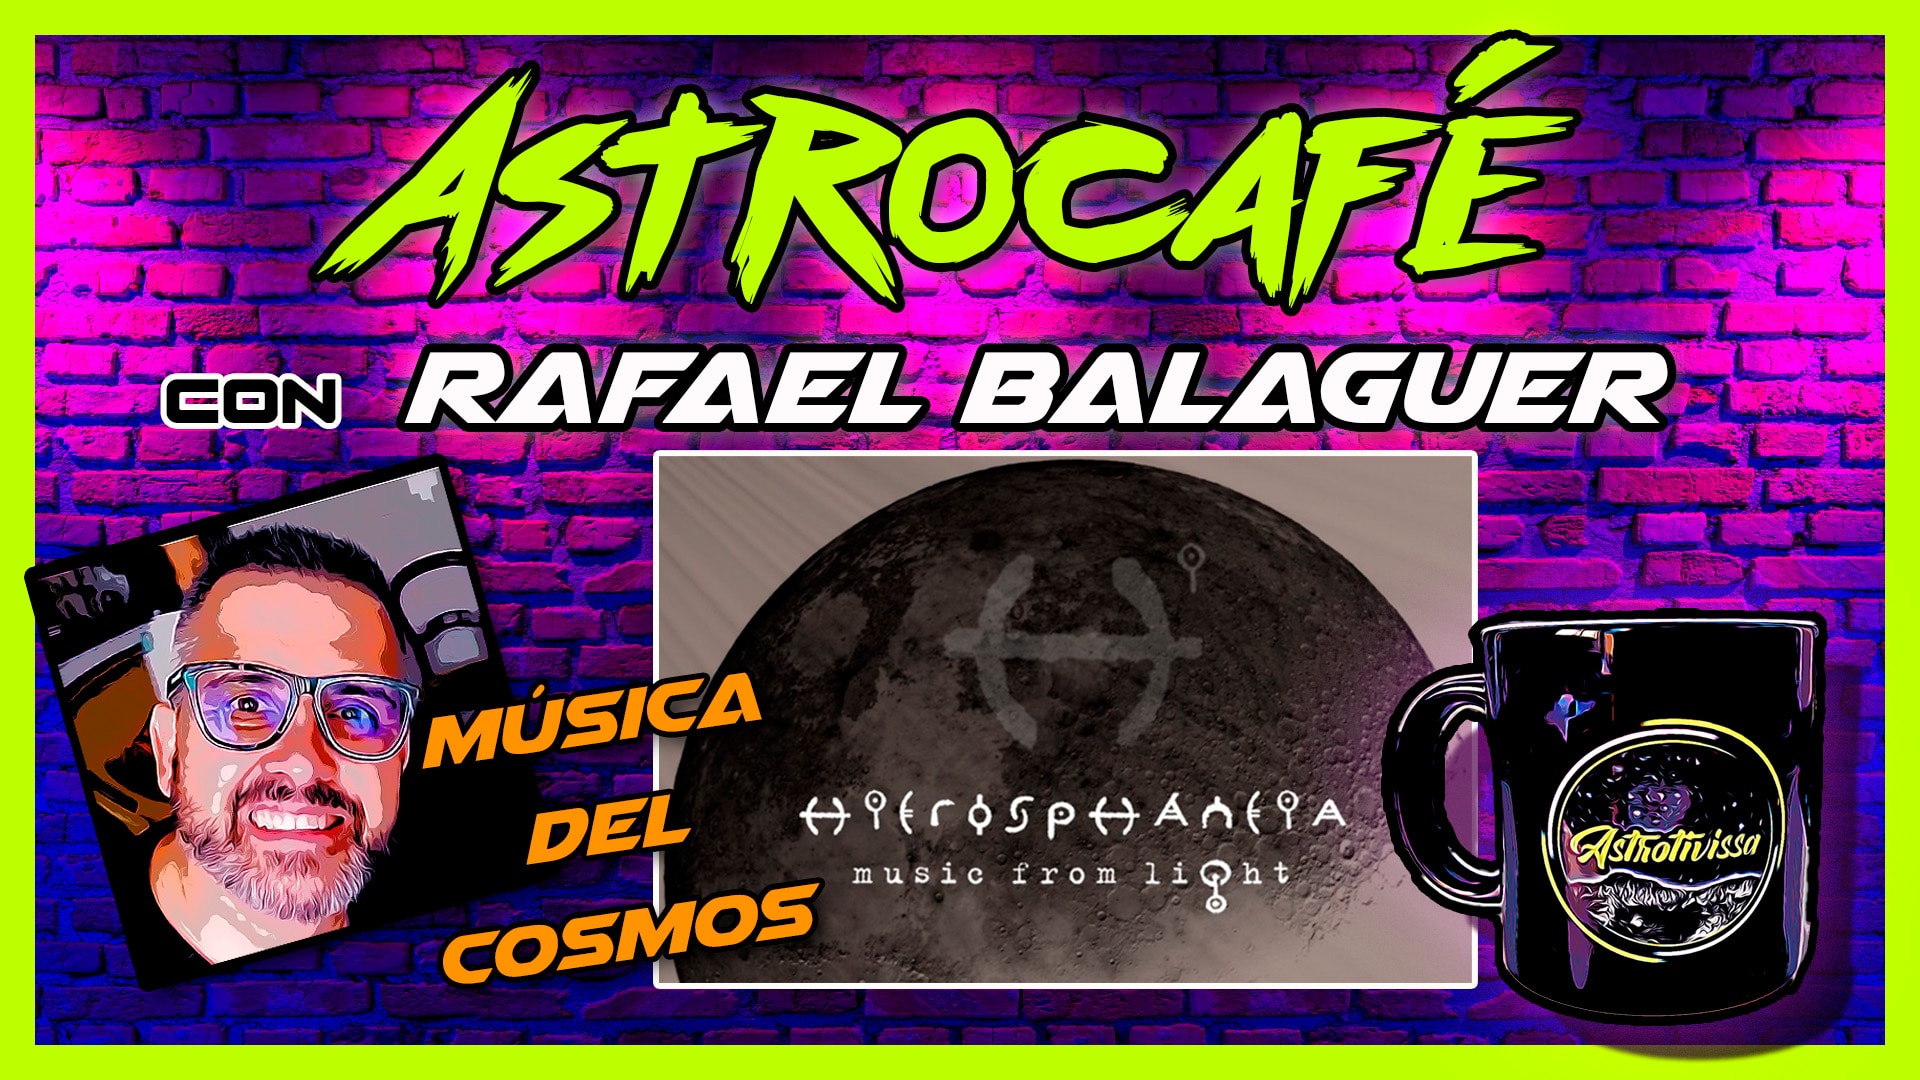 Astrocafé con RAFAEL BALAGUER | HIEROSPHÁNEIA | Music From Light |